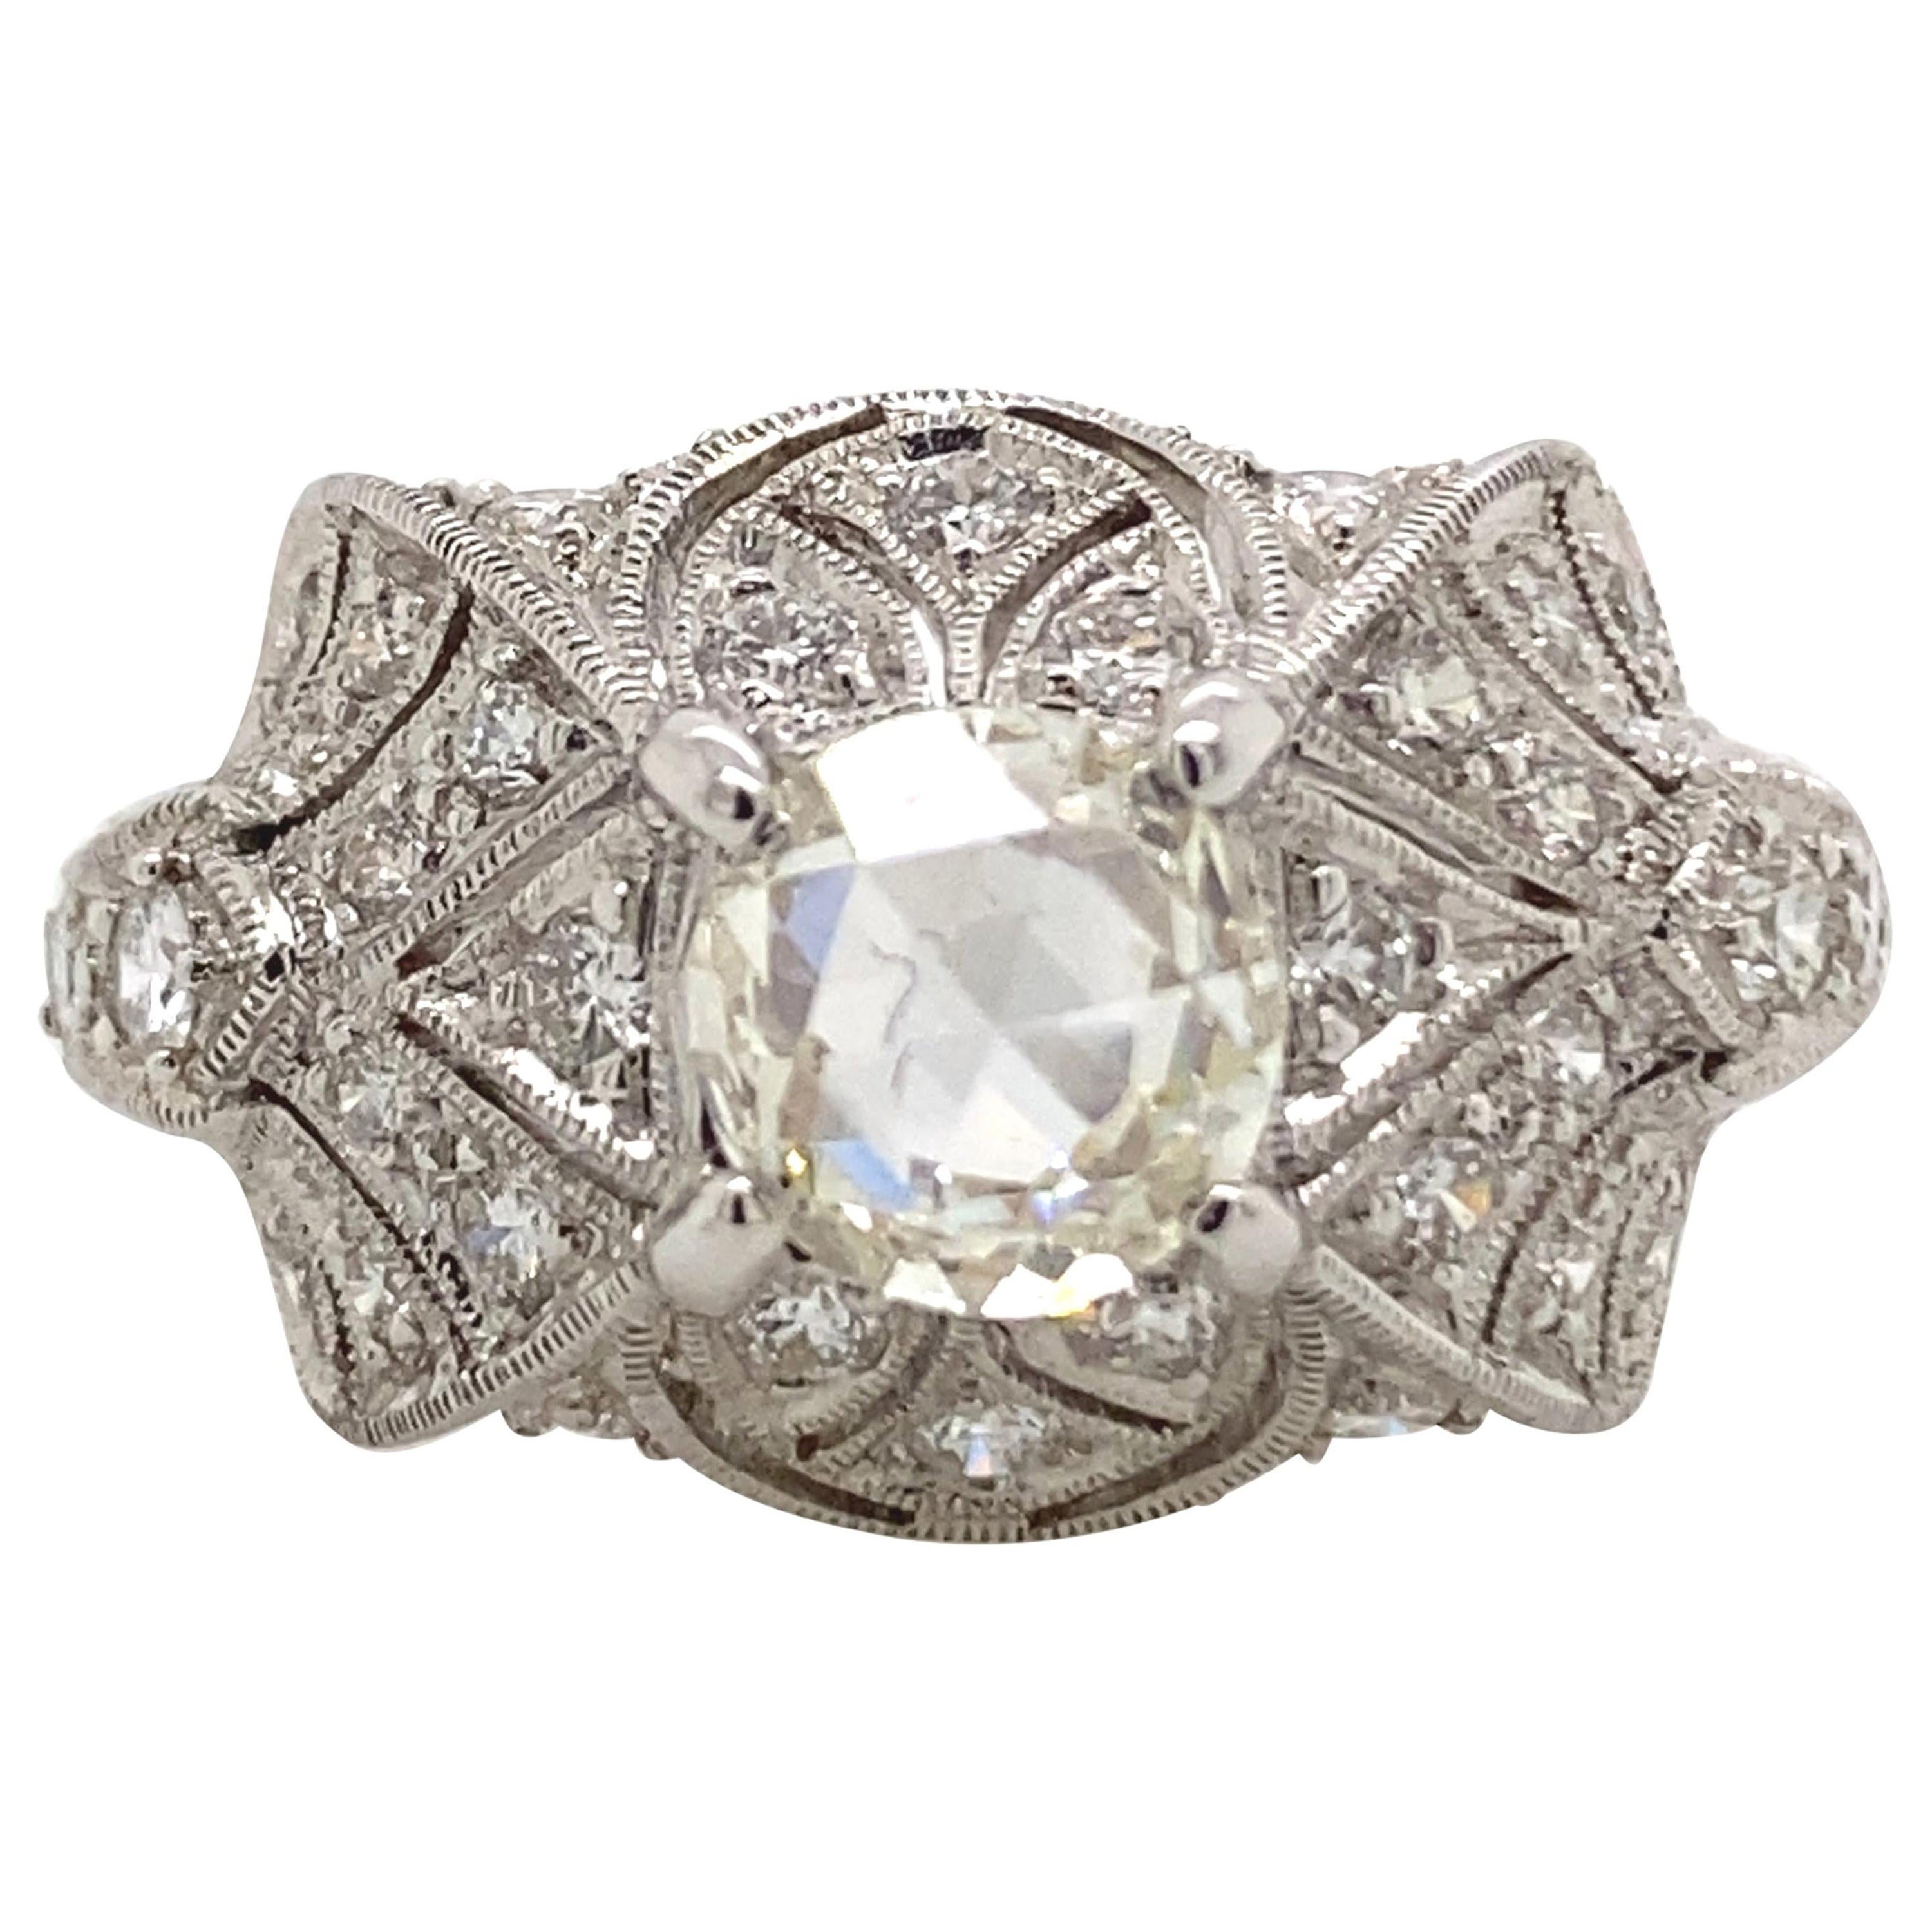 1.49 Carat Edwardian Inspired Diamond Ring 18 Karat White Gold